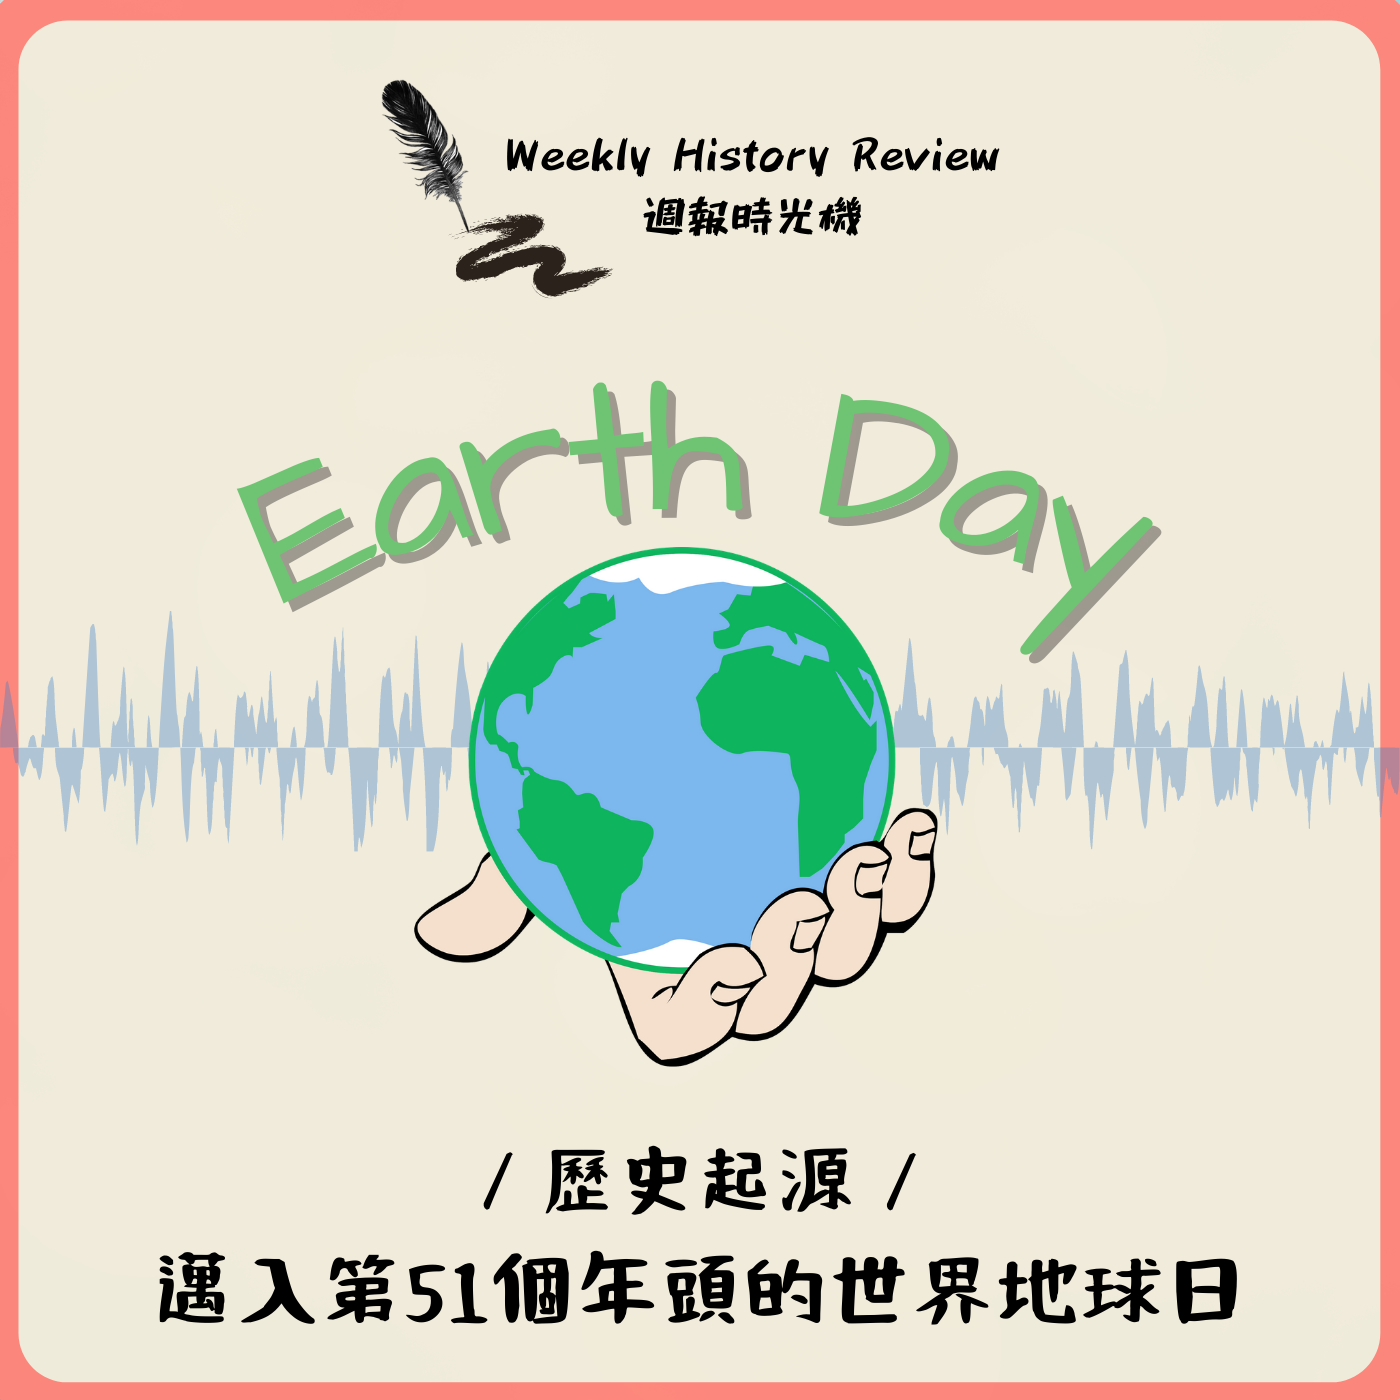 歷史事件》邁入第51個年頭的世界地球日（Earth Day）是怎麼來的？_EP36